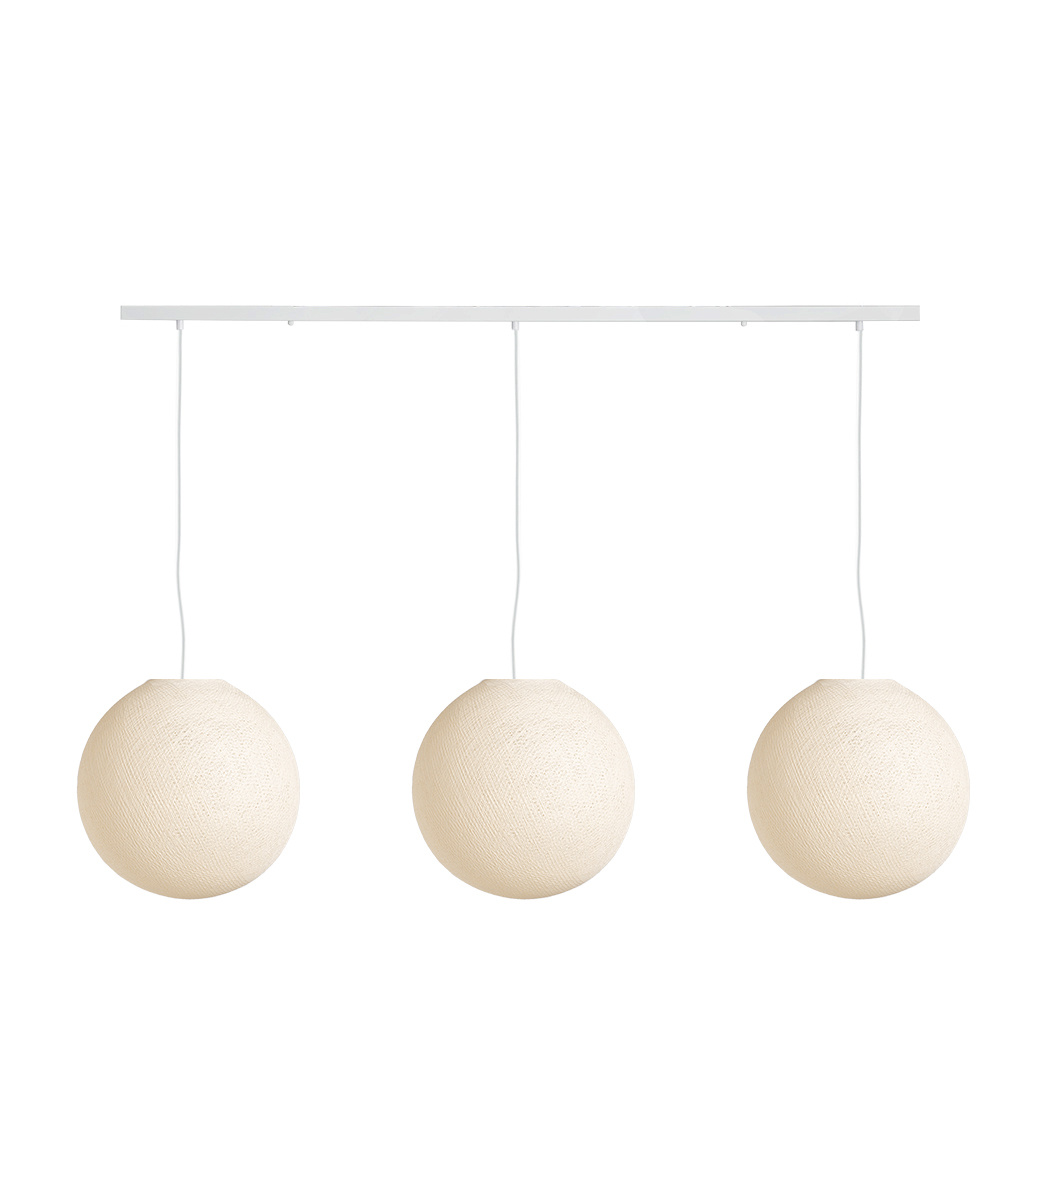 Cotton Ball Lights Drievoudige hanglamp balk - Shell